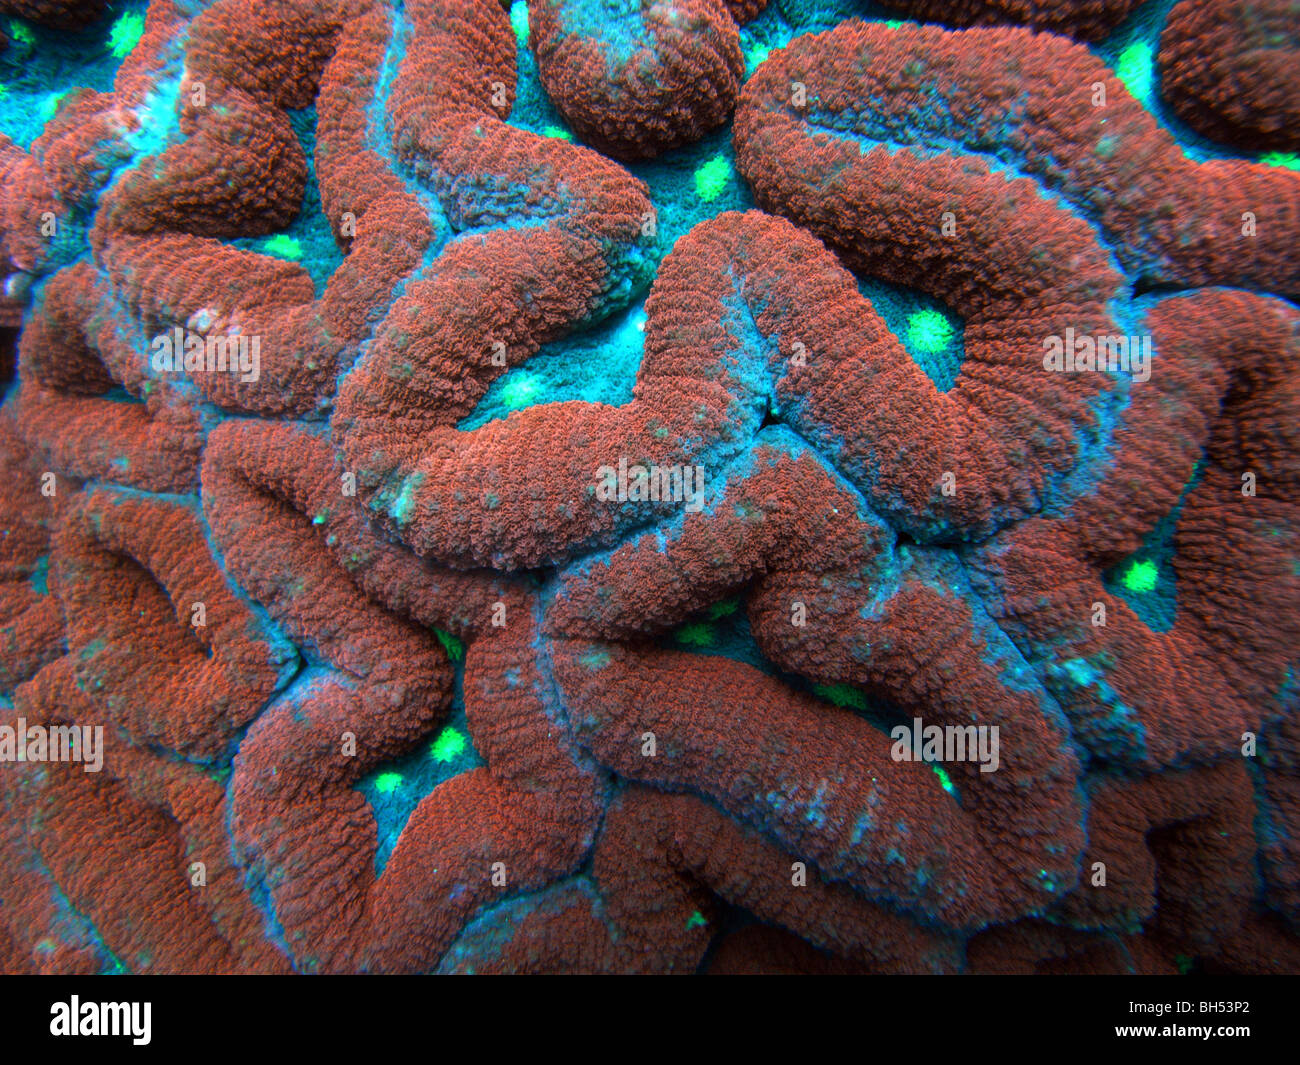 Les couleurs des coraux fluorescents (Lobophyllia hemprichii), le parc marin de Komodo, Indonésie Banque D'Images